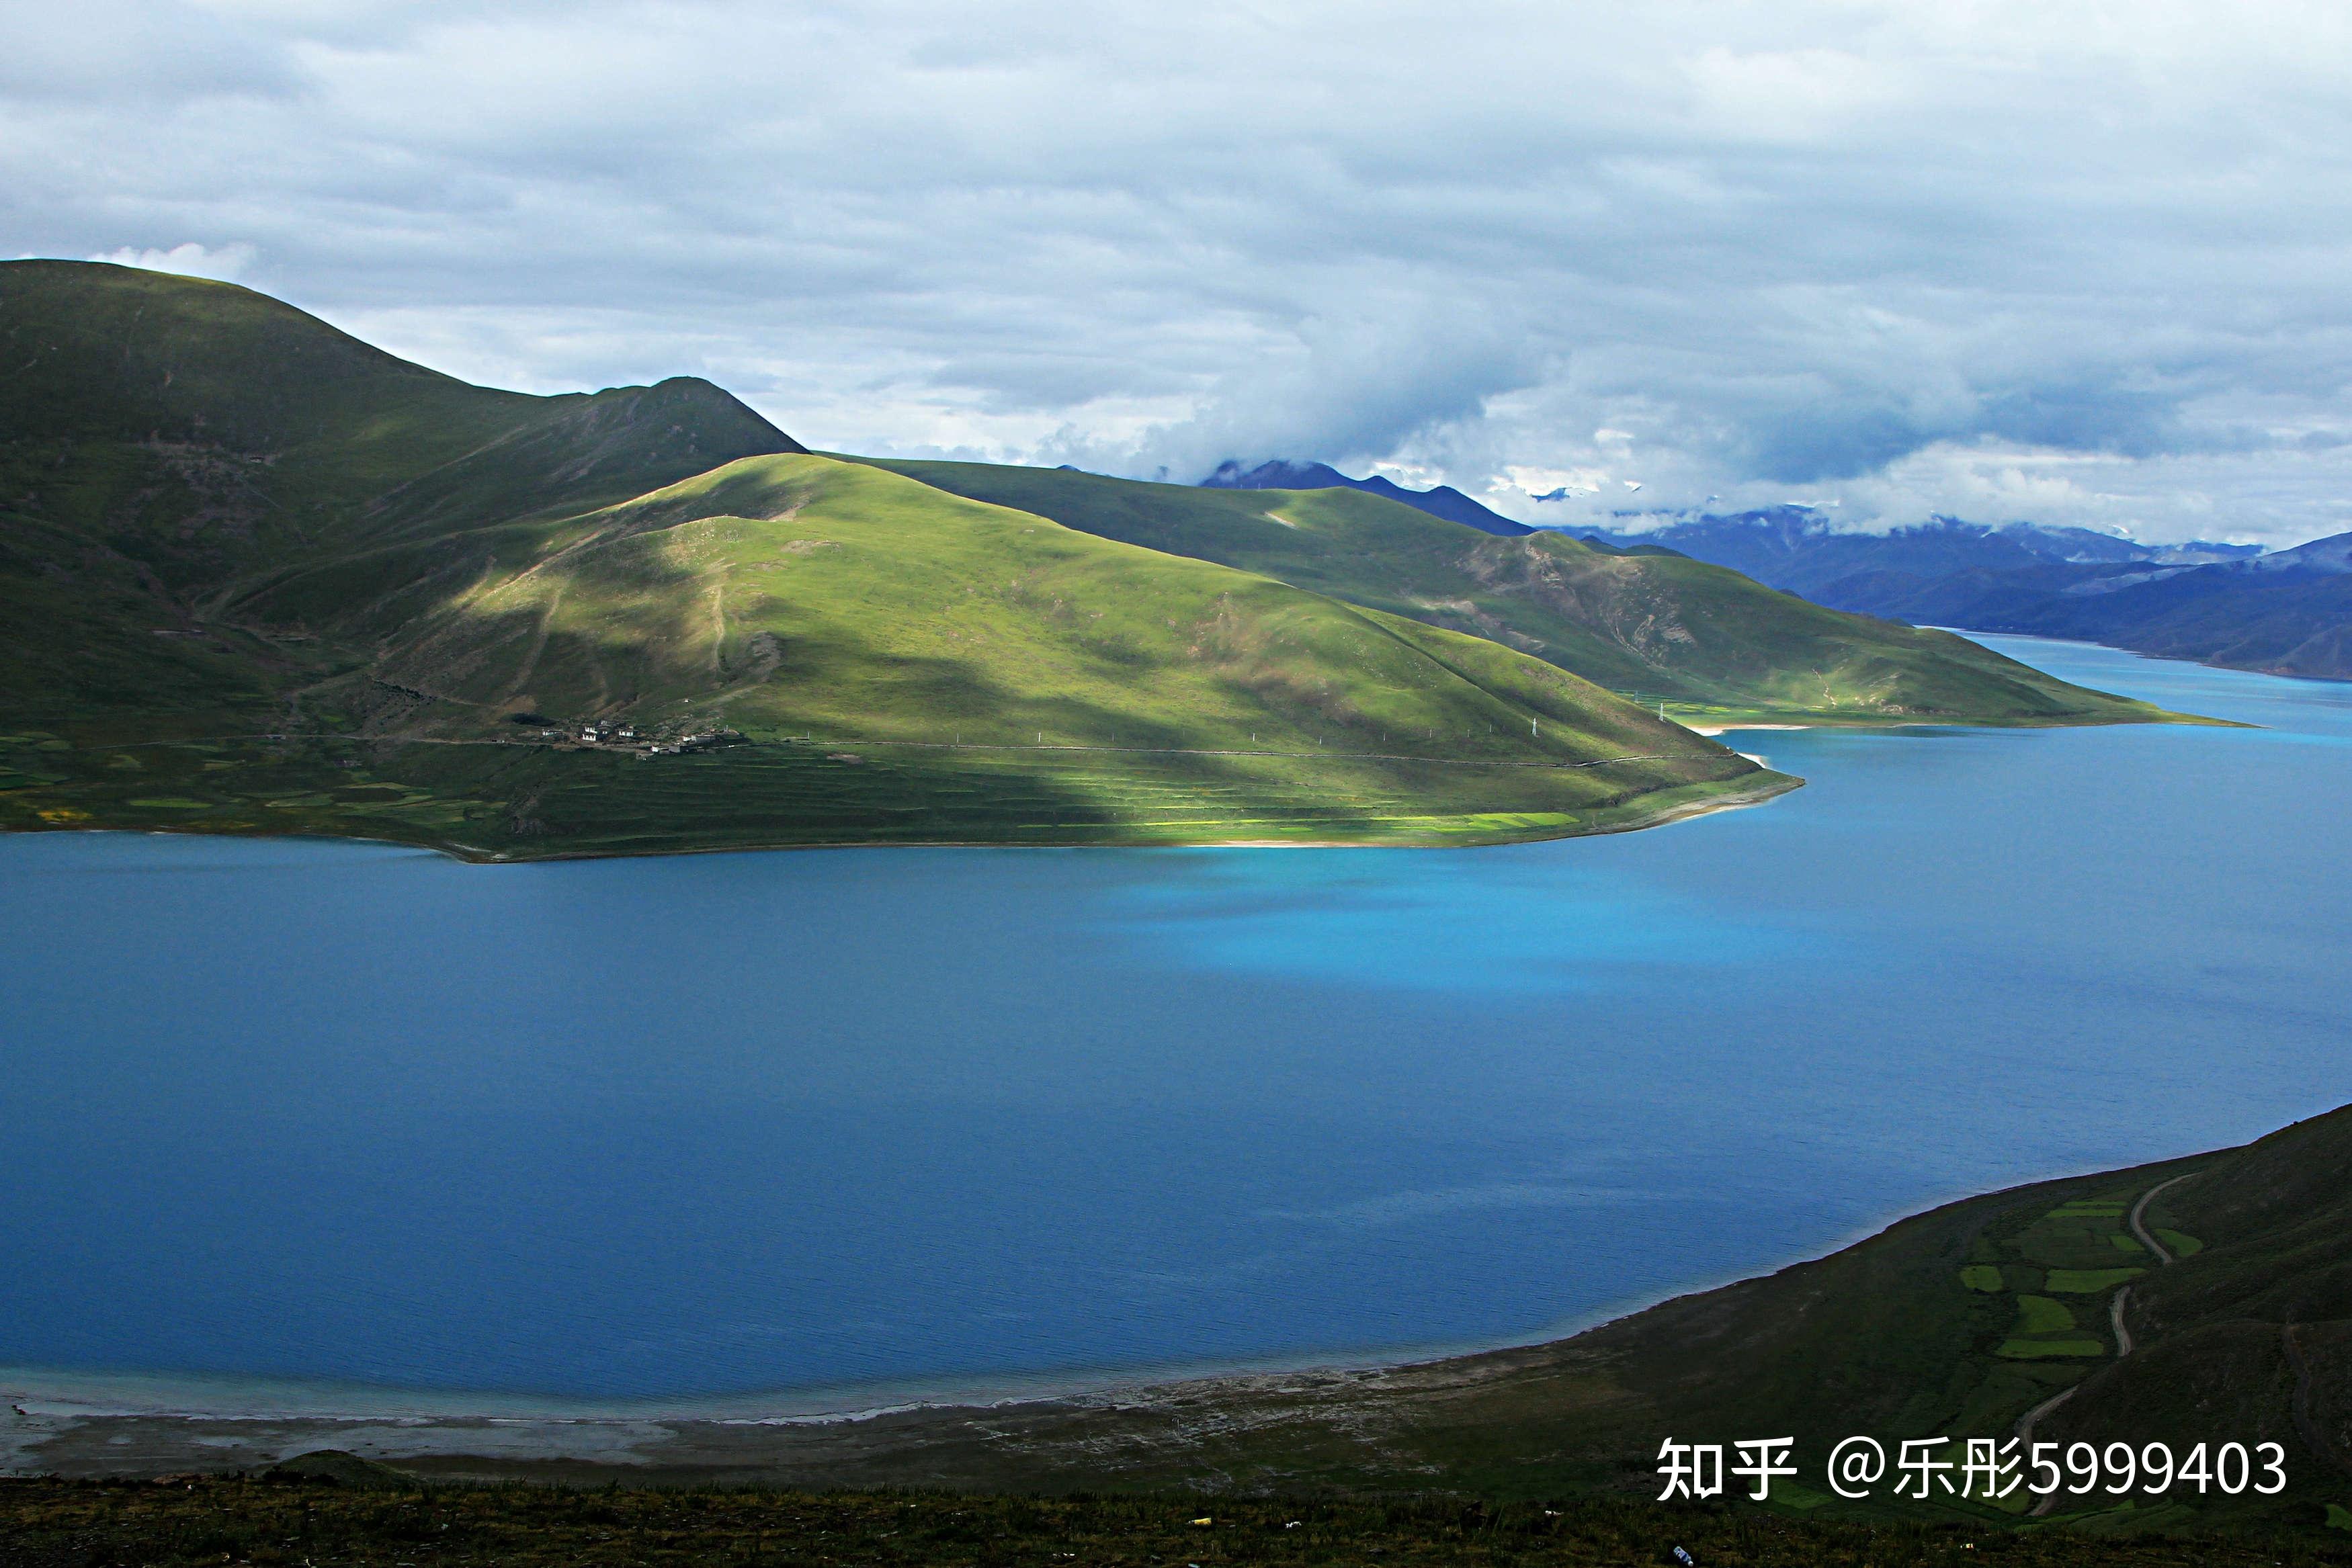 去西藏旅游的最佳时间是几月份 - 知乎